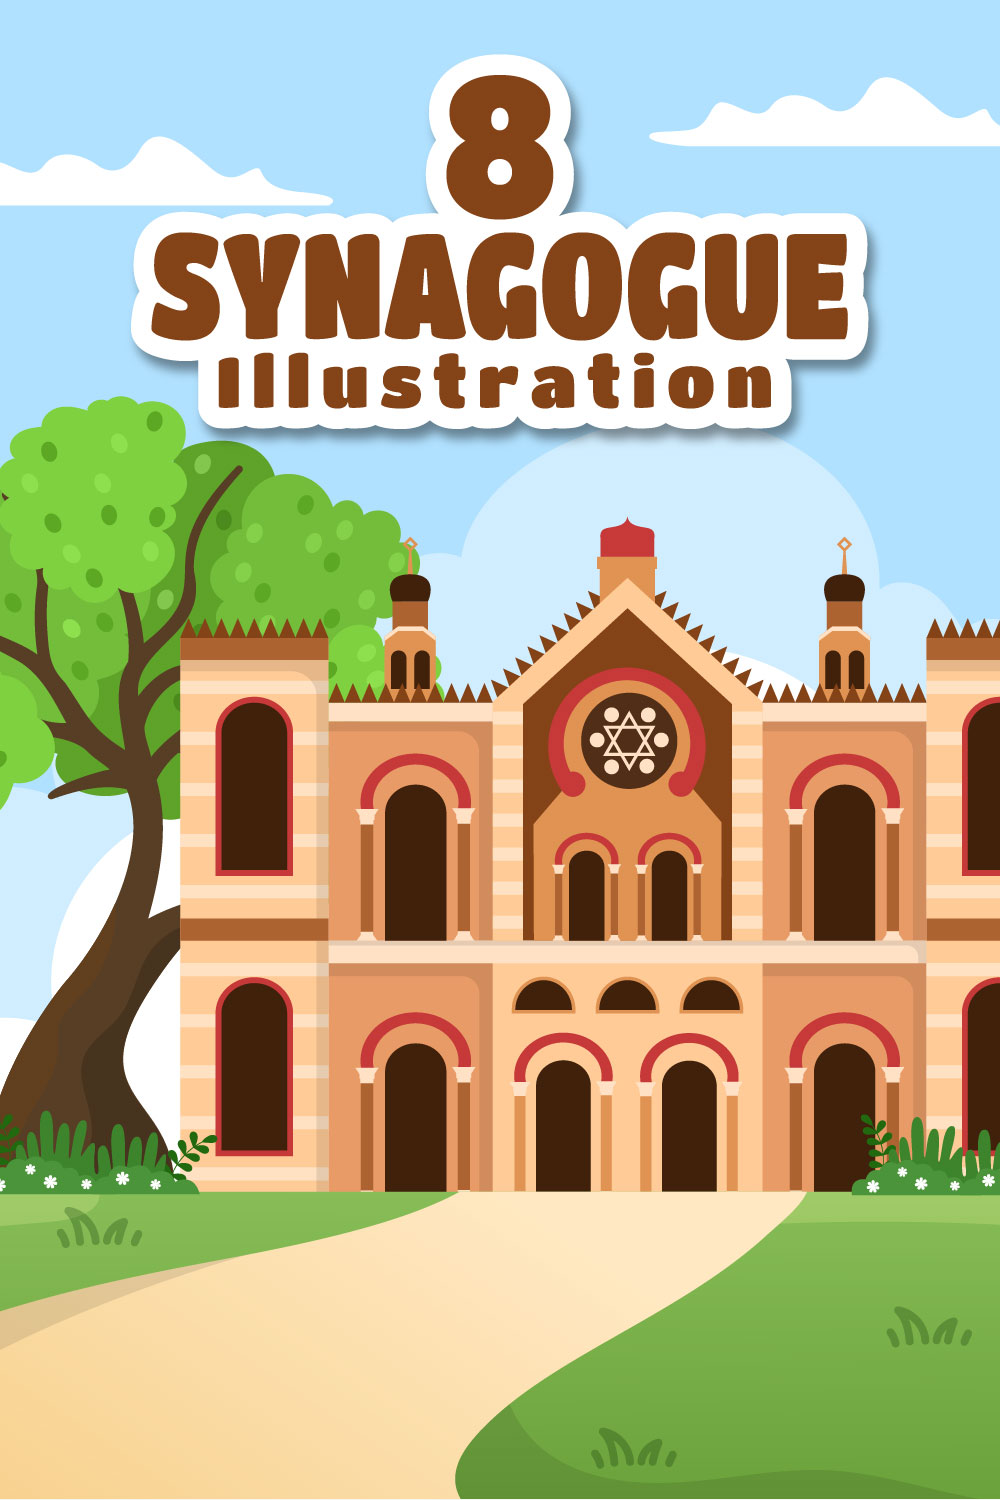 Synagogue Building or Jewish Temple Design Illustration pinterest image.